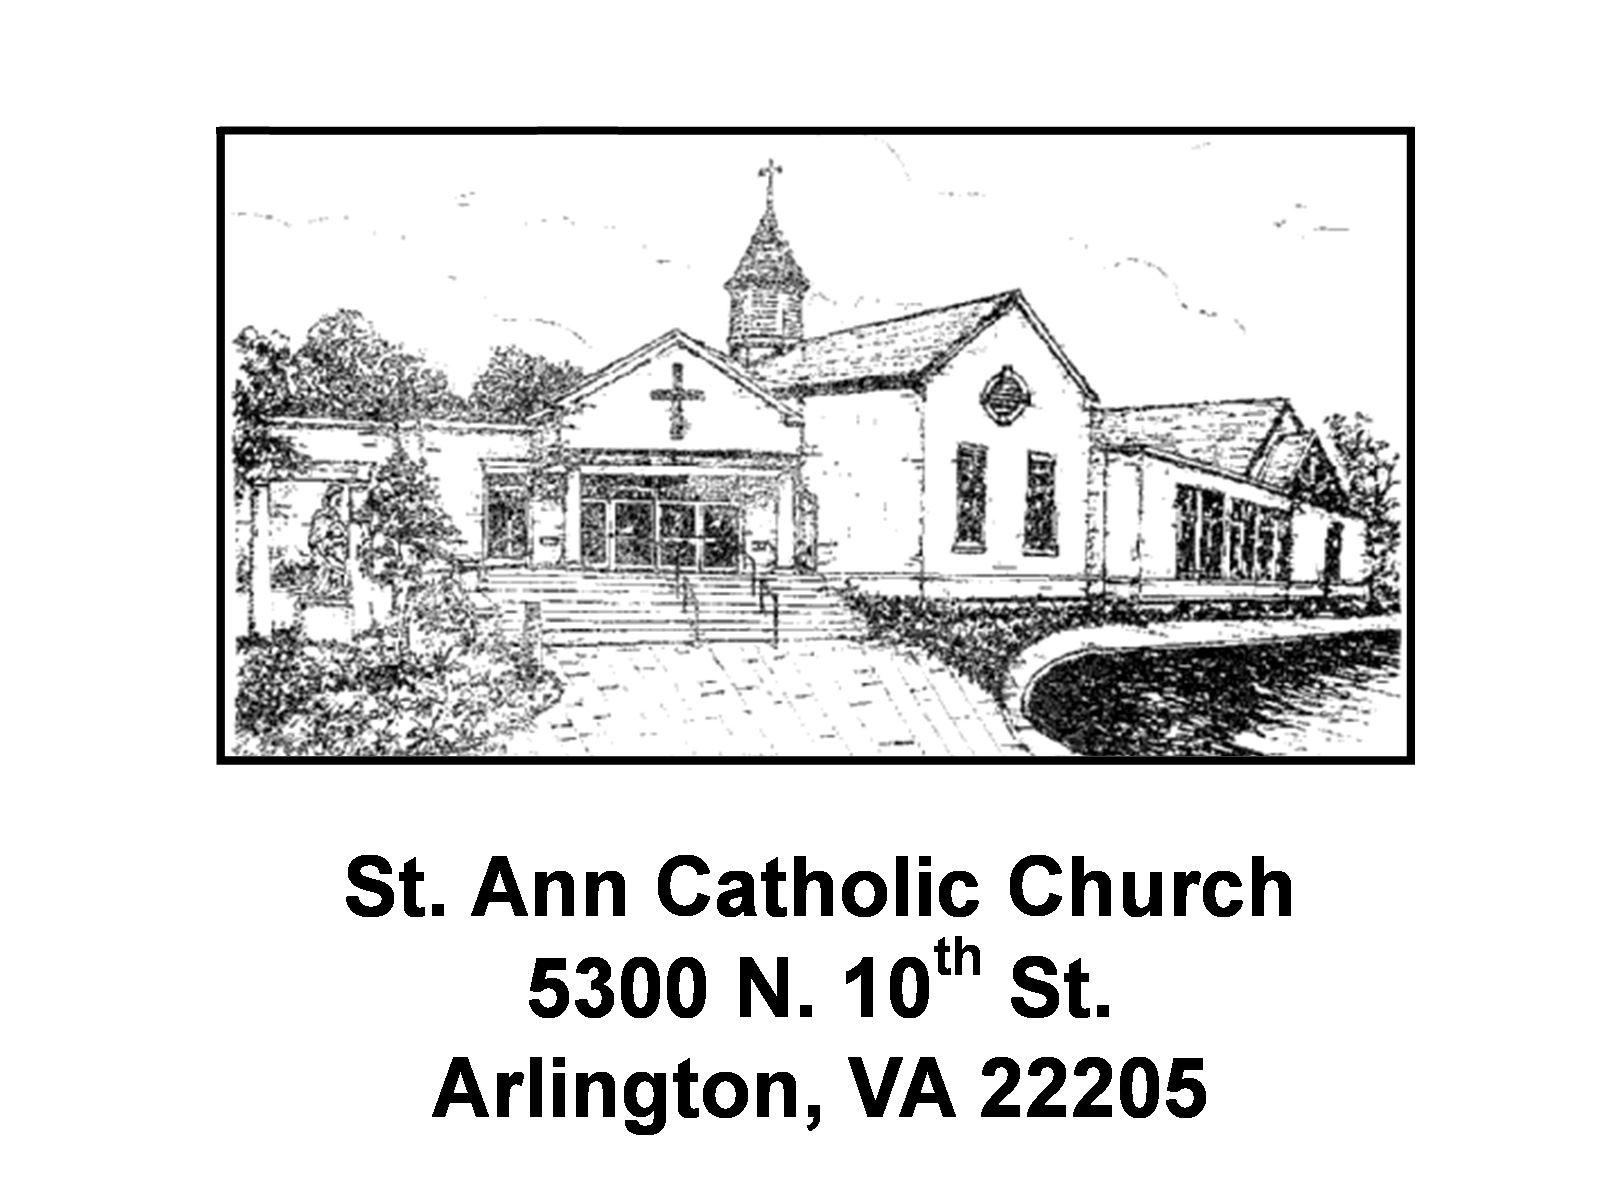 Saint Ann Catholic Church logo